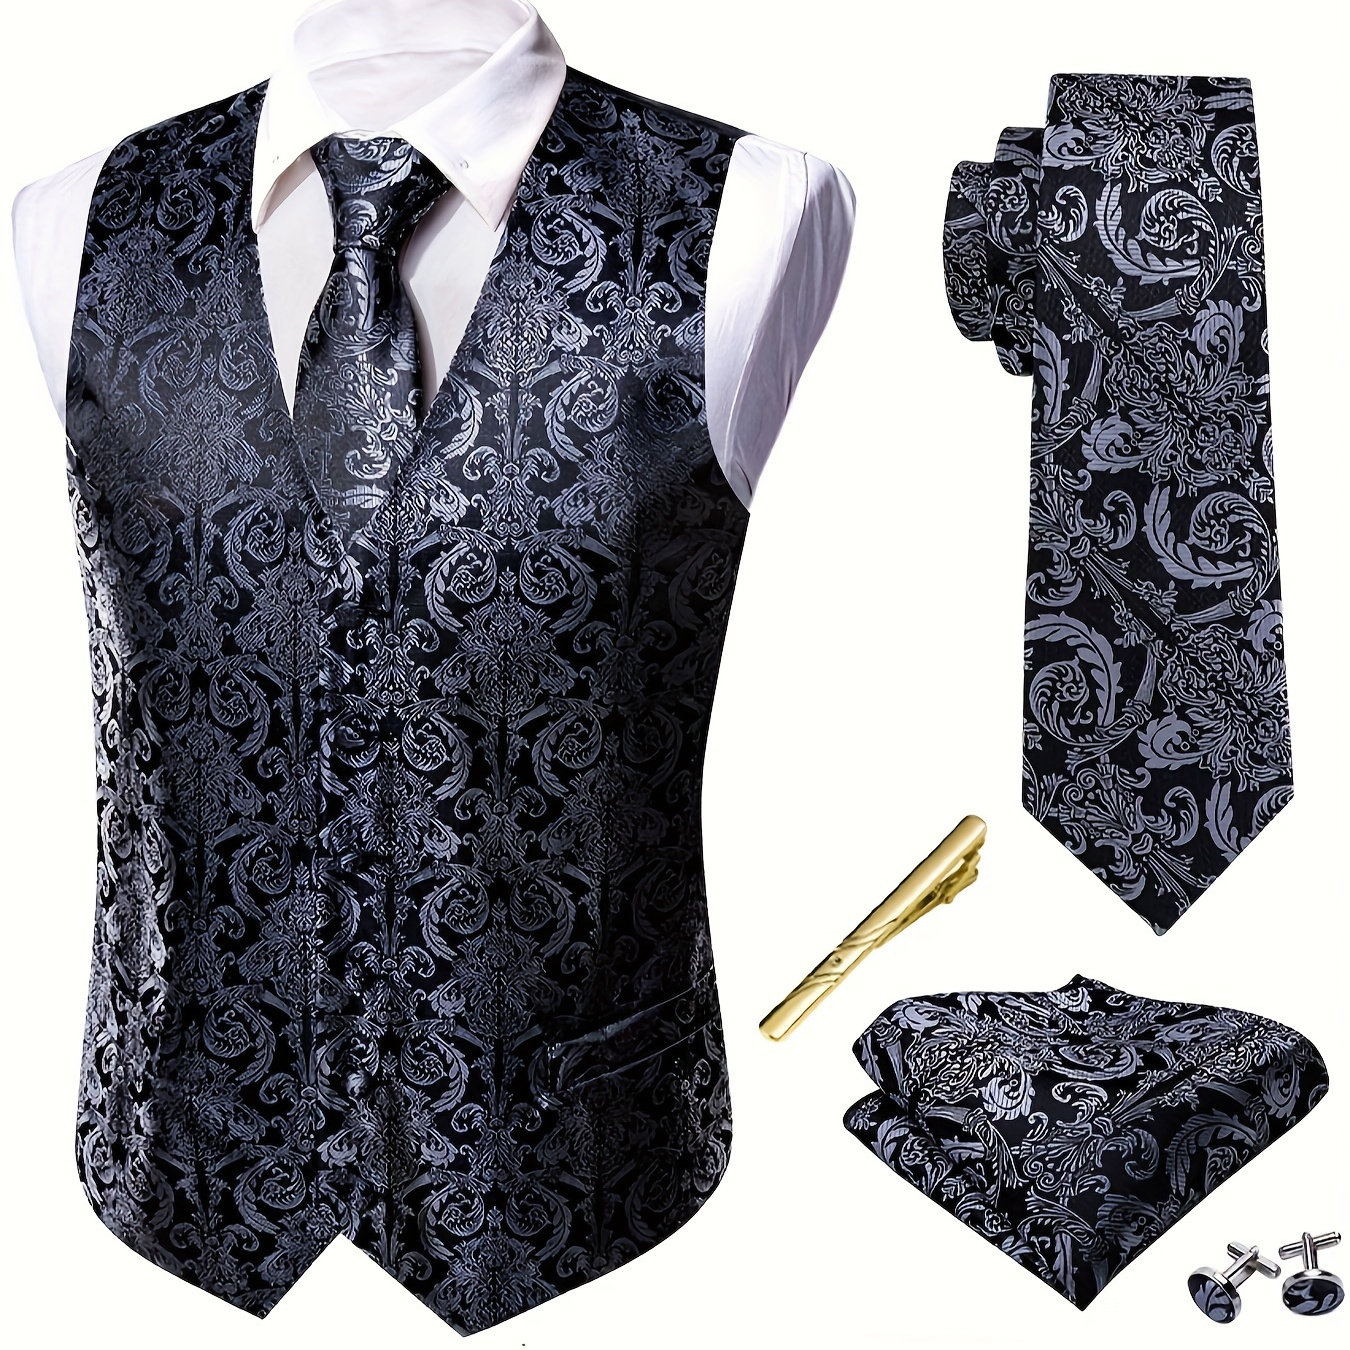 

Men's Plus Size Royal Black Floral Jacquard V Neck Vest Suit, Waistcoat Necktie Square Hanky Cufflinks Tie 5pcs Set, For Formal/wedding Suit Set